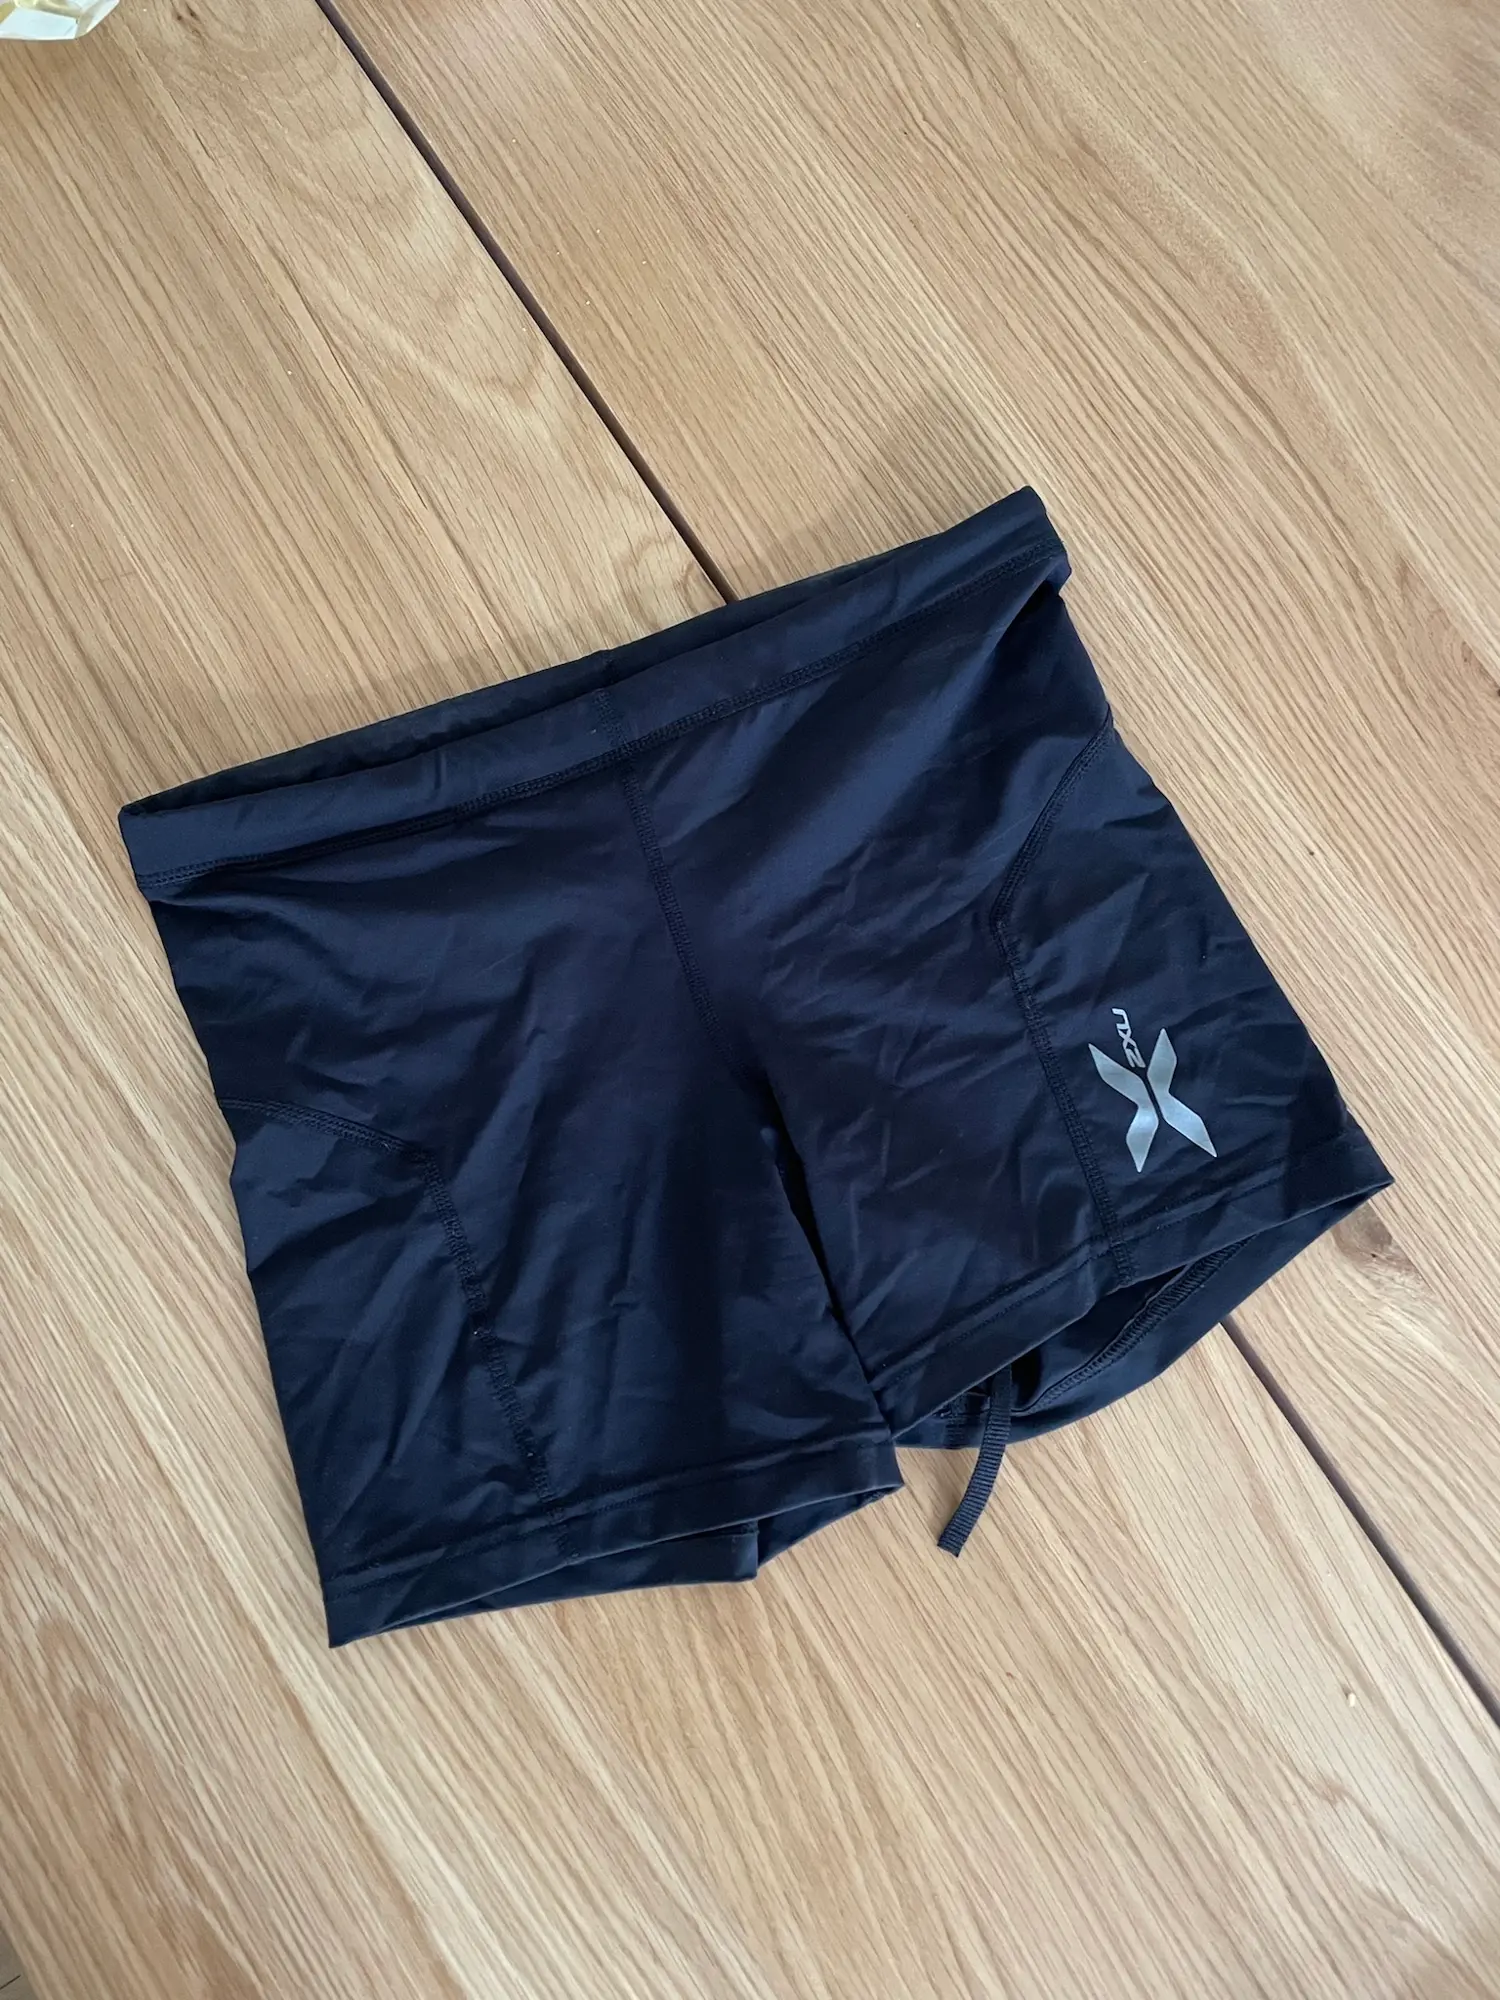 2XU shorts